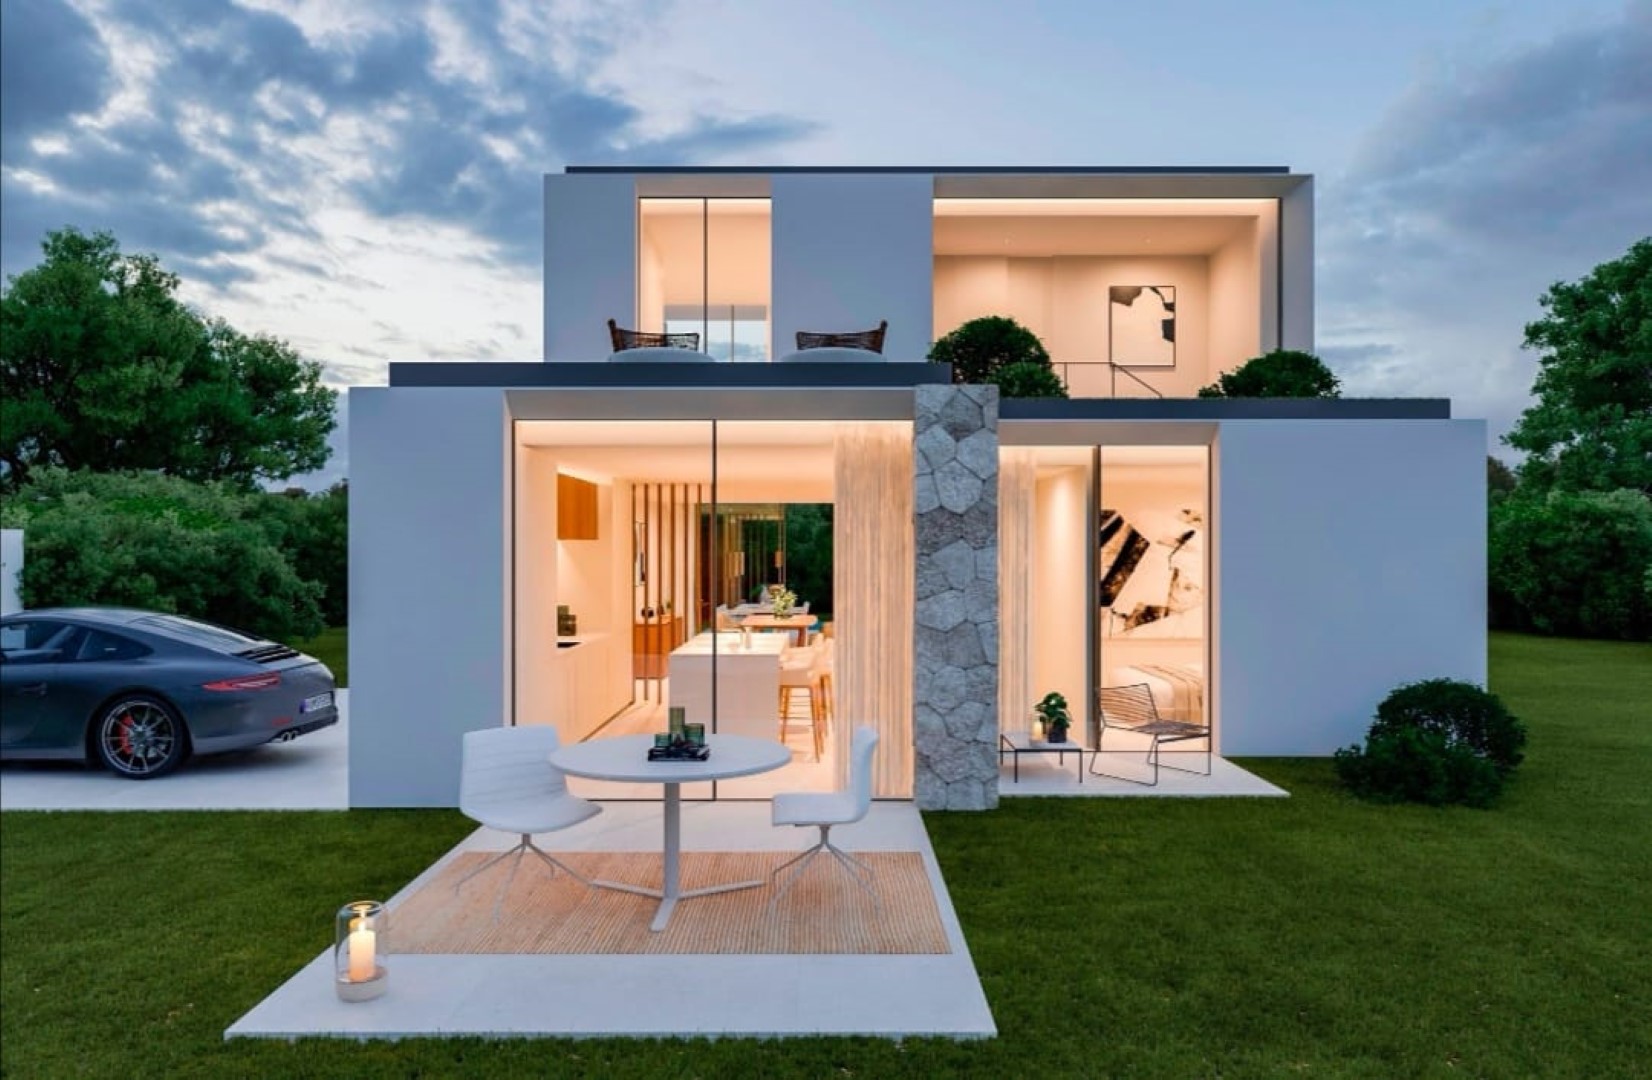 Modern new build villa for sale in Denia